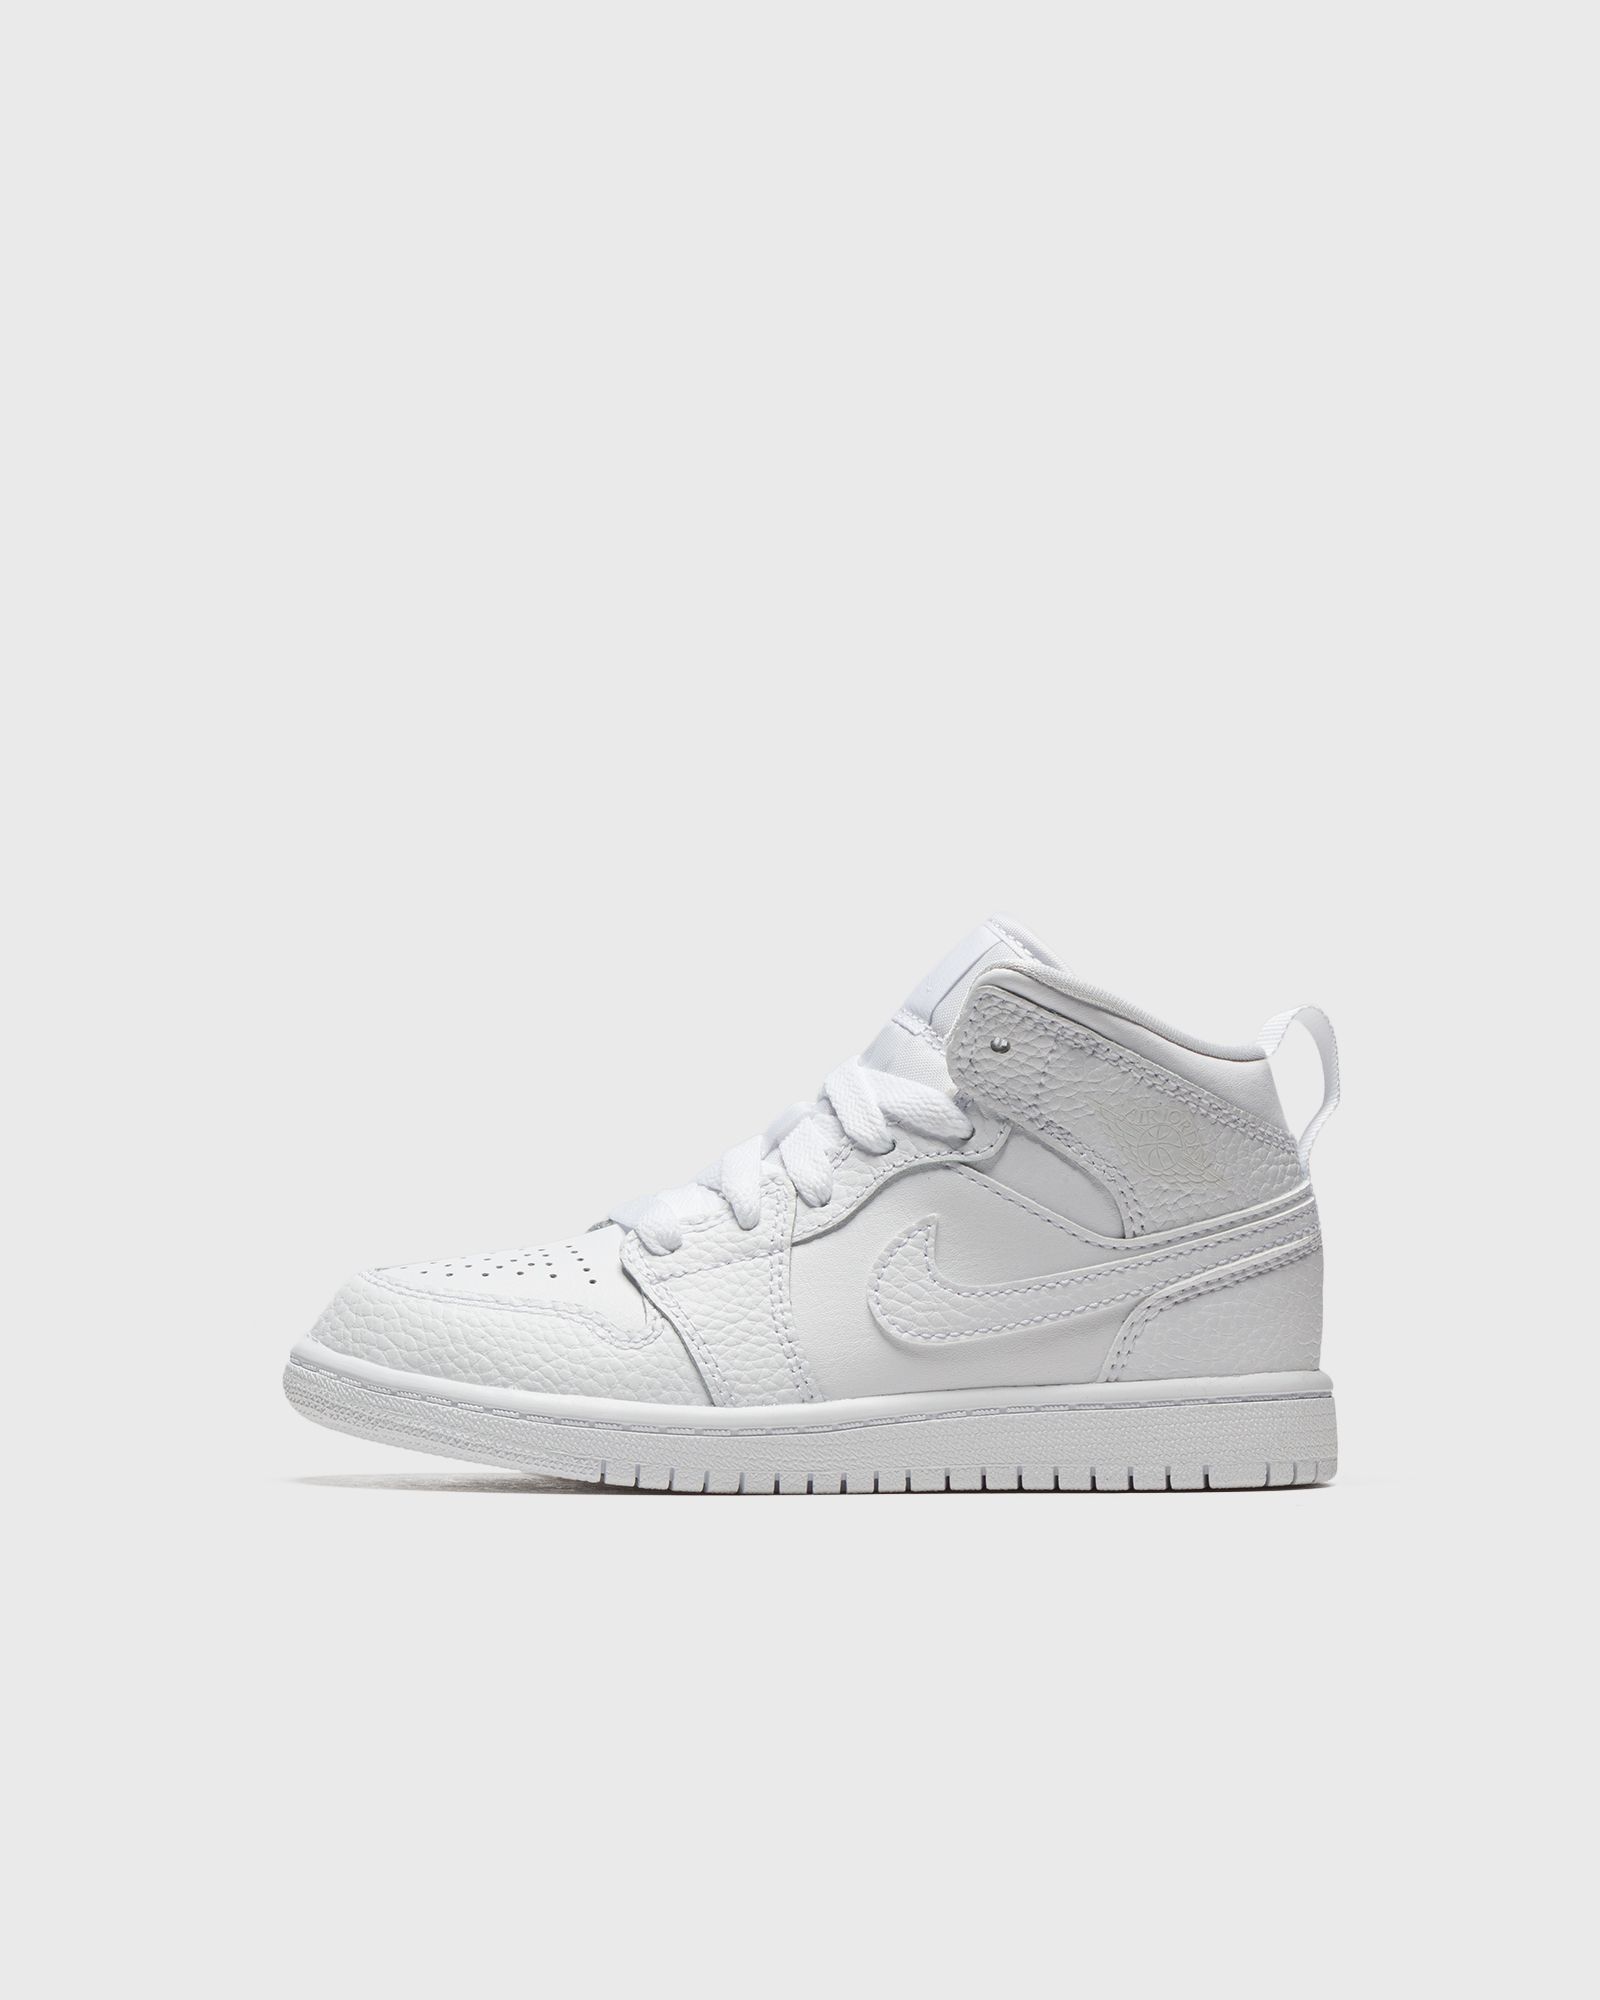 Jordan - 1 mid (ps)  sneakers white in größe:28